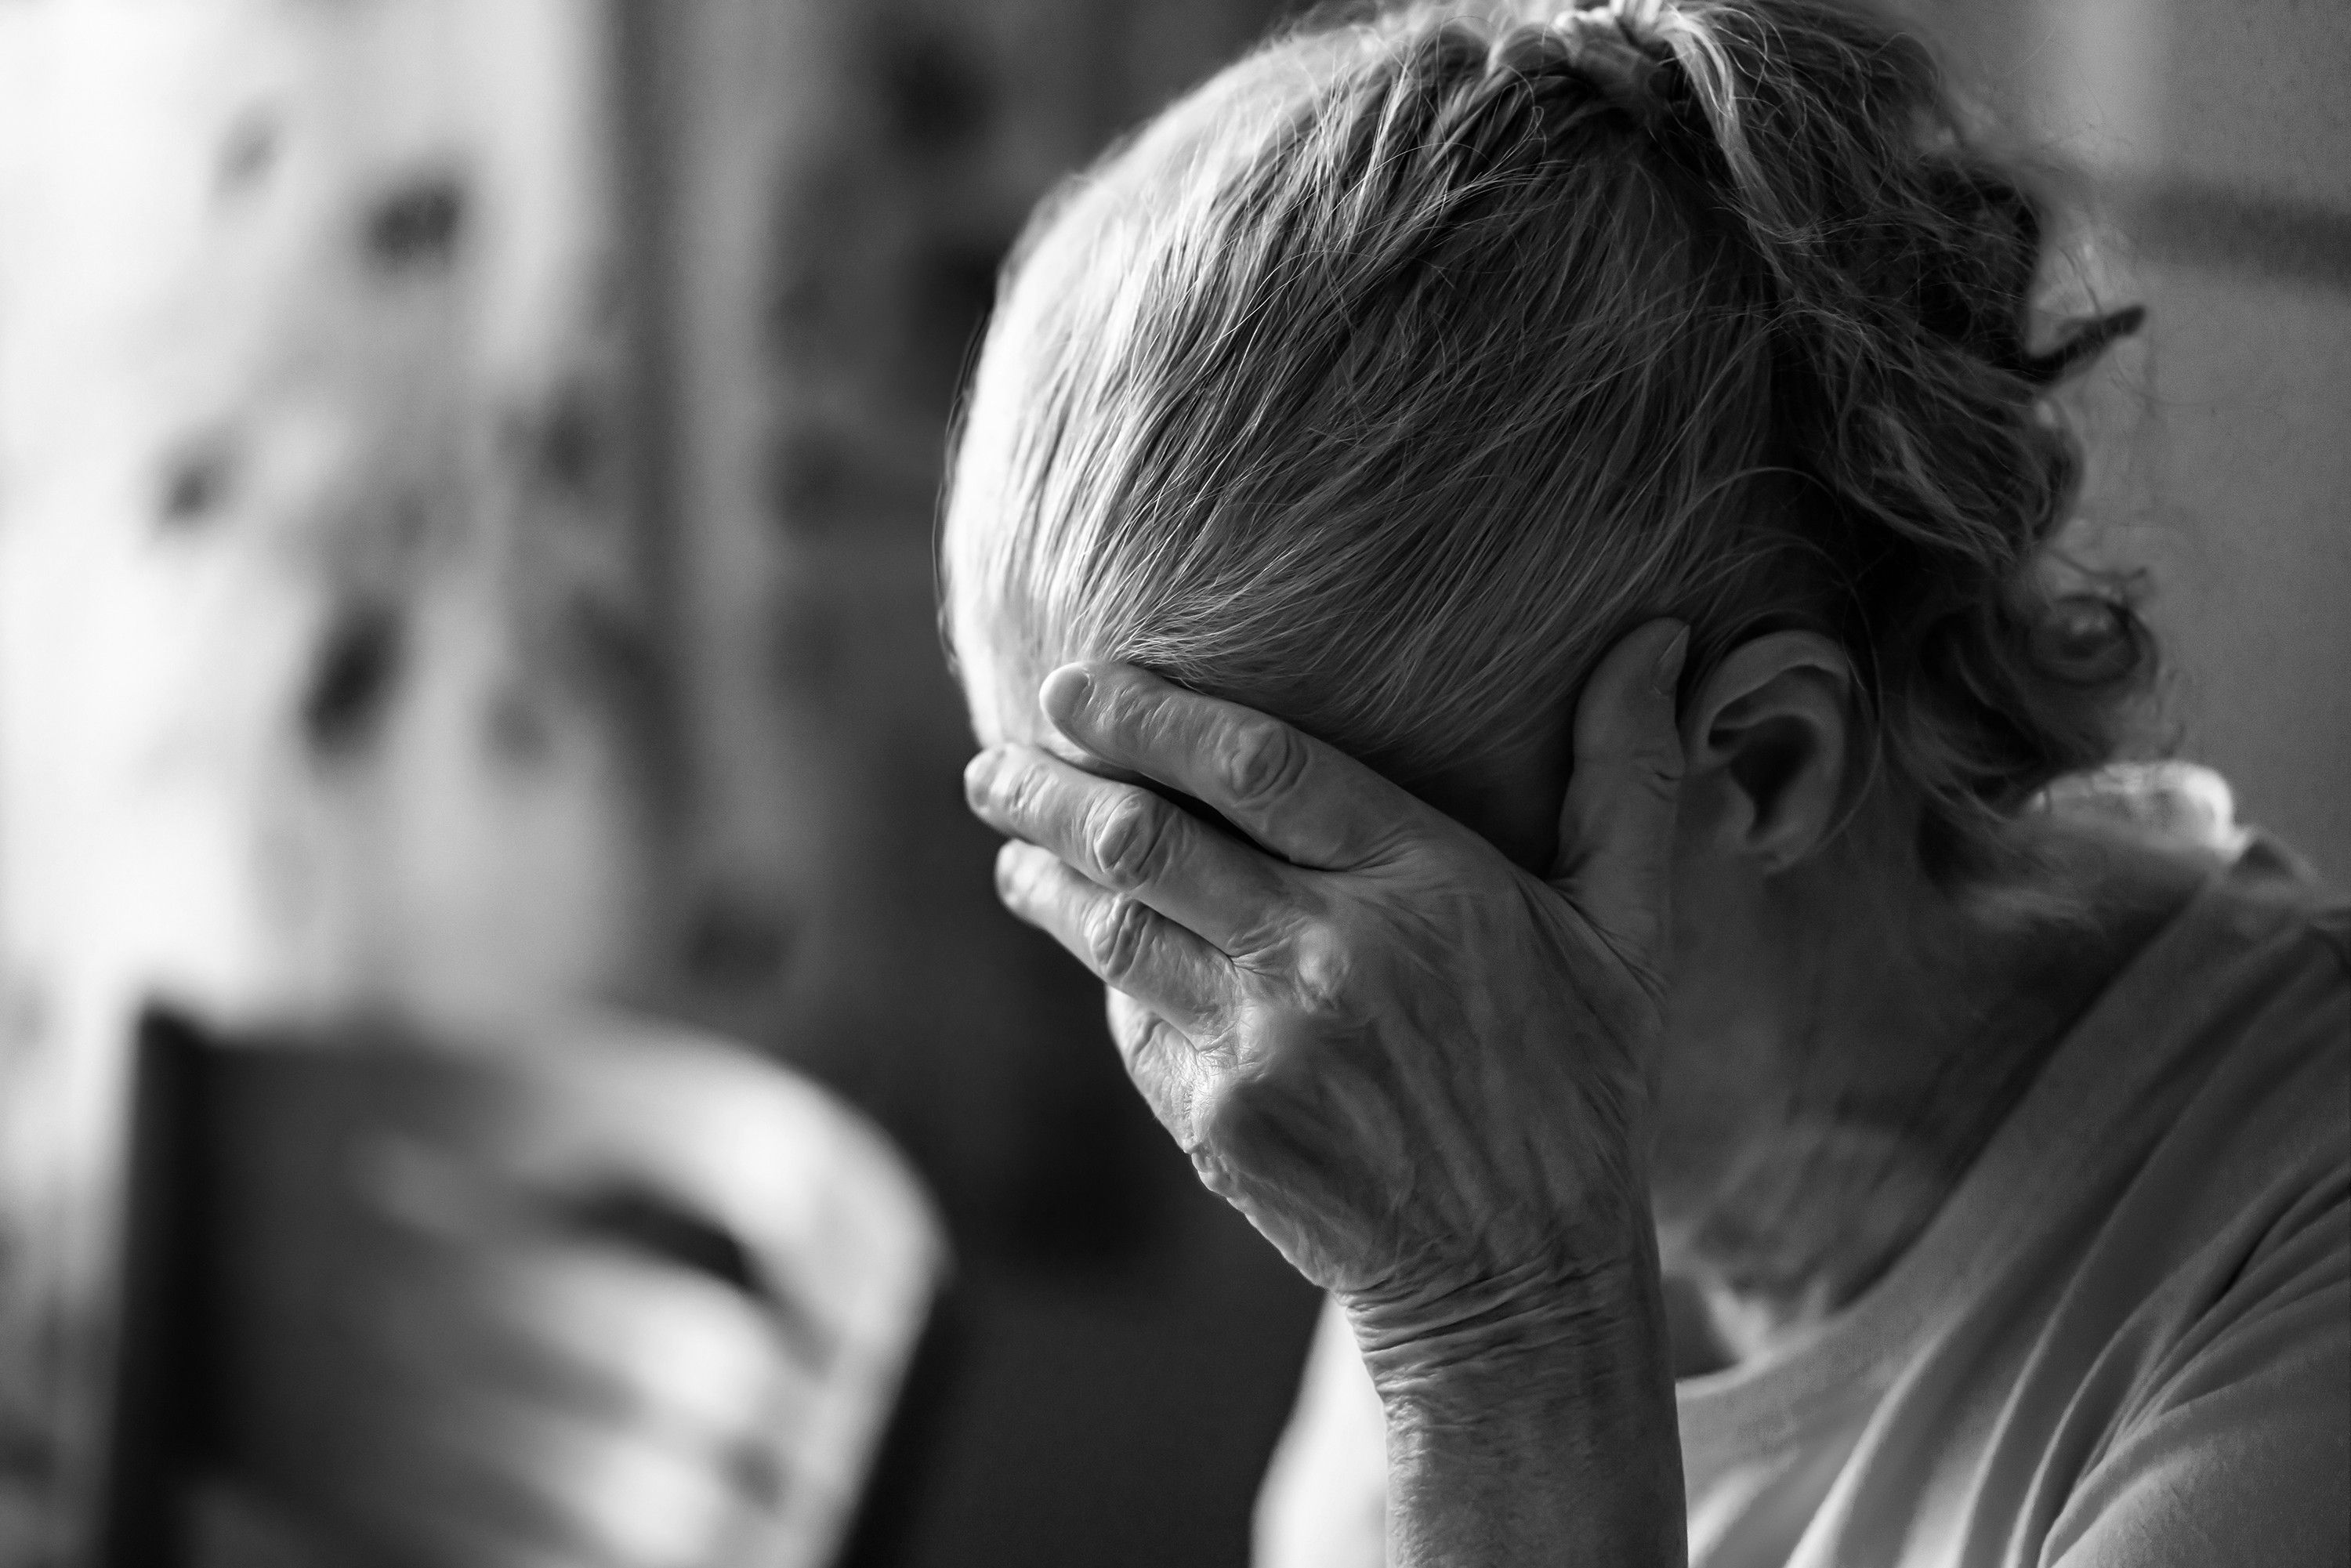 Más angustia, impotencia y soledad: la pandemia ha pasado una gran factura emocional a los mayores